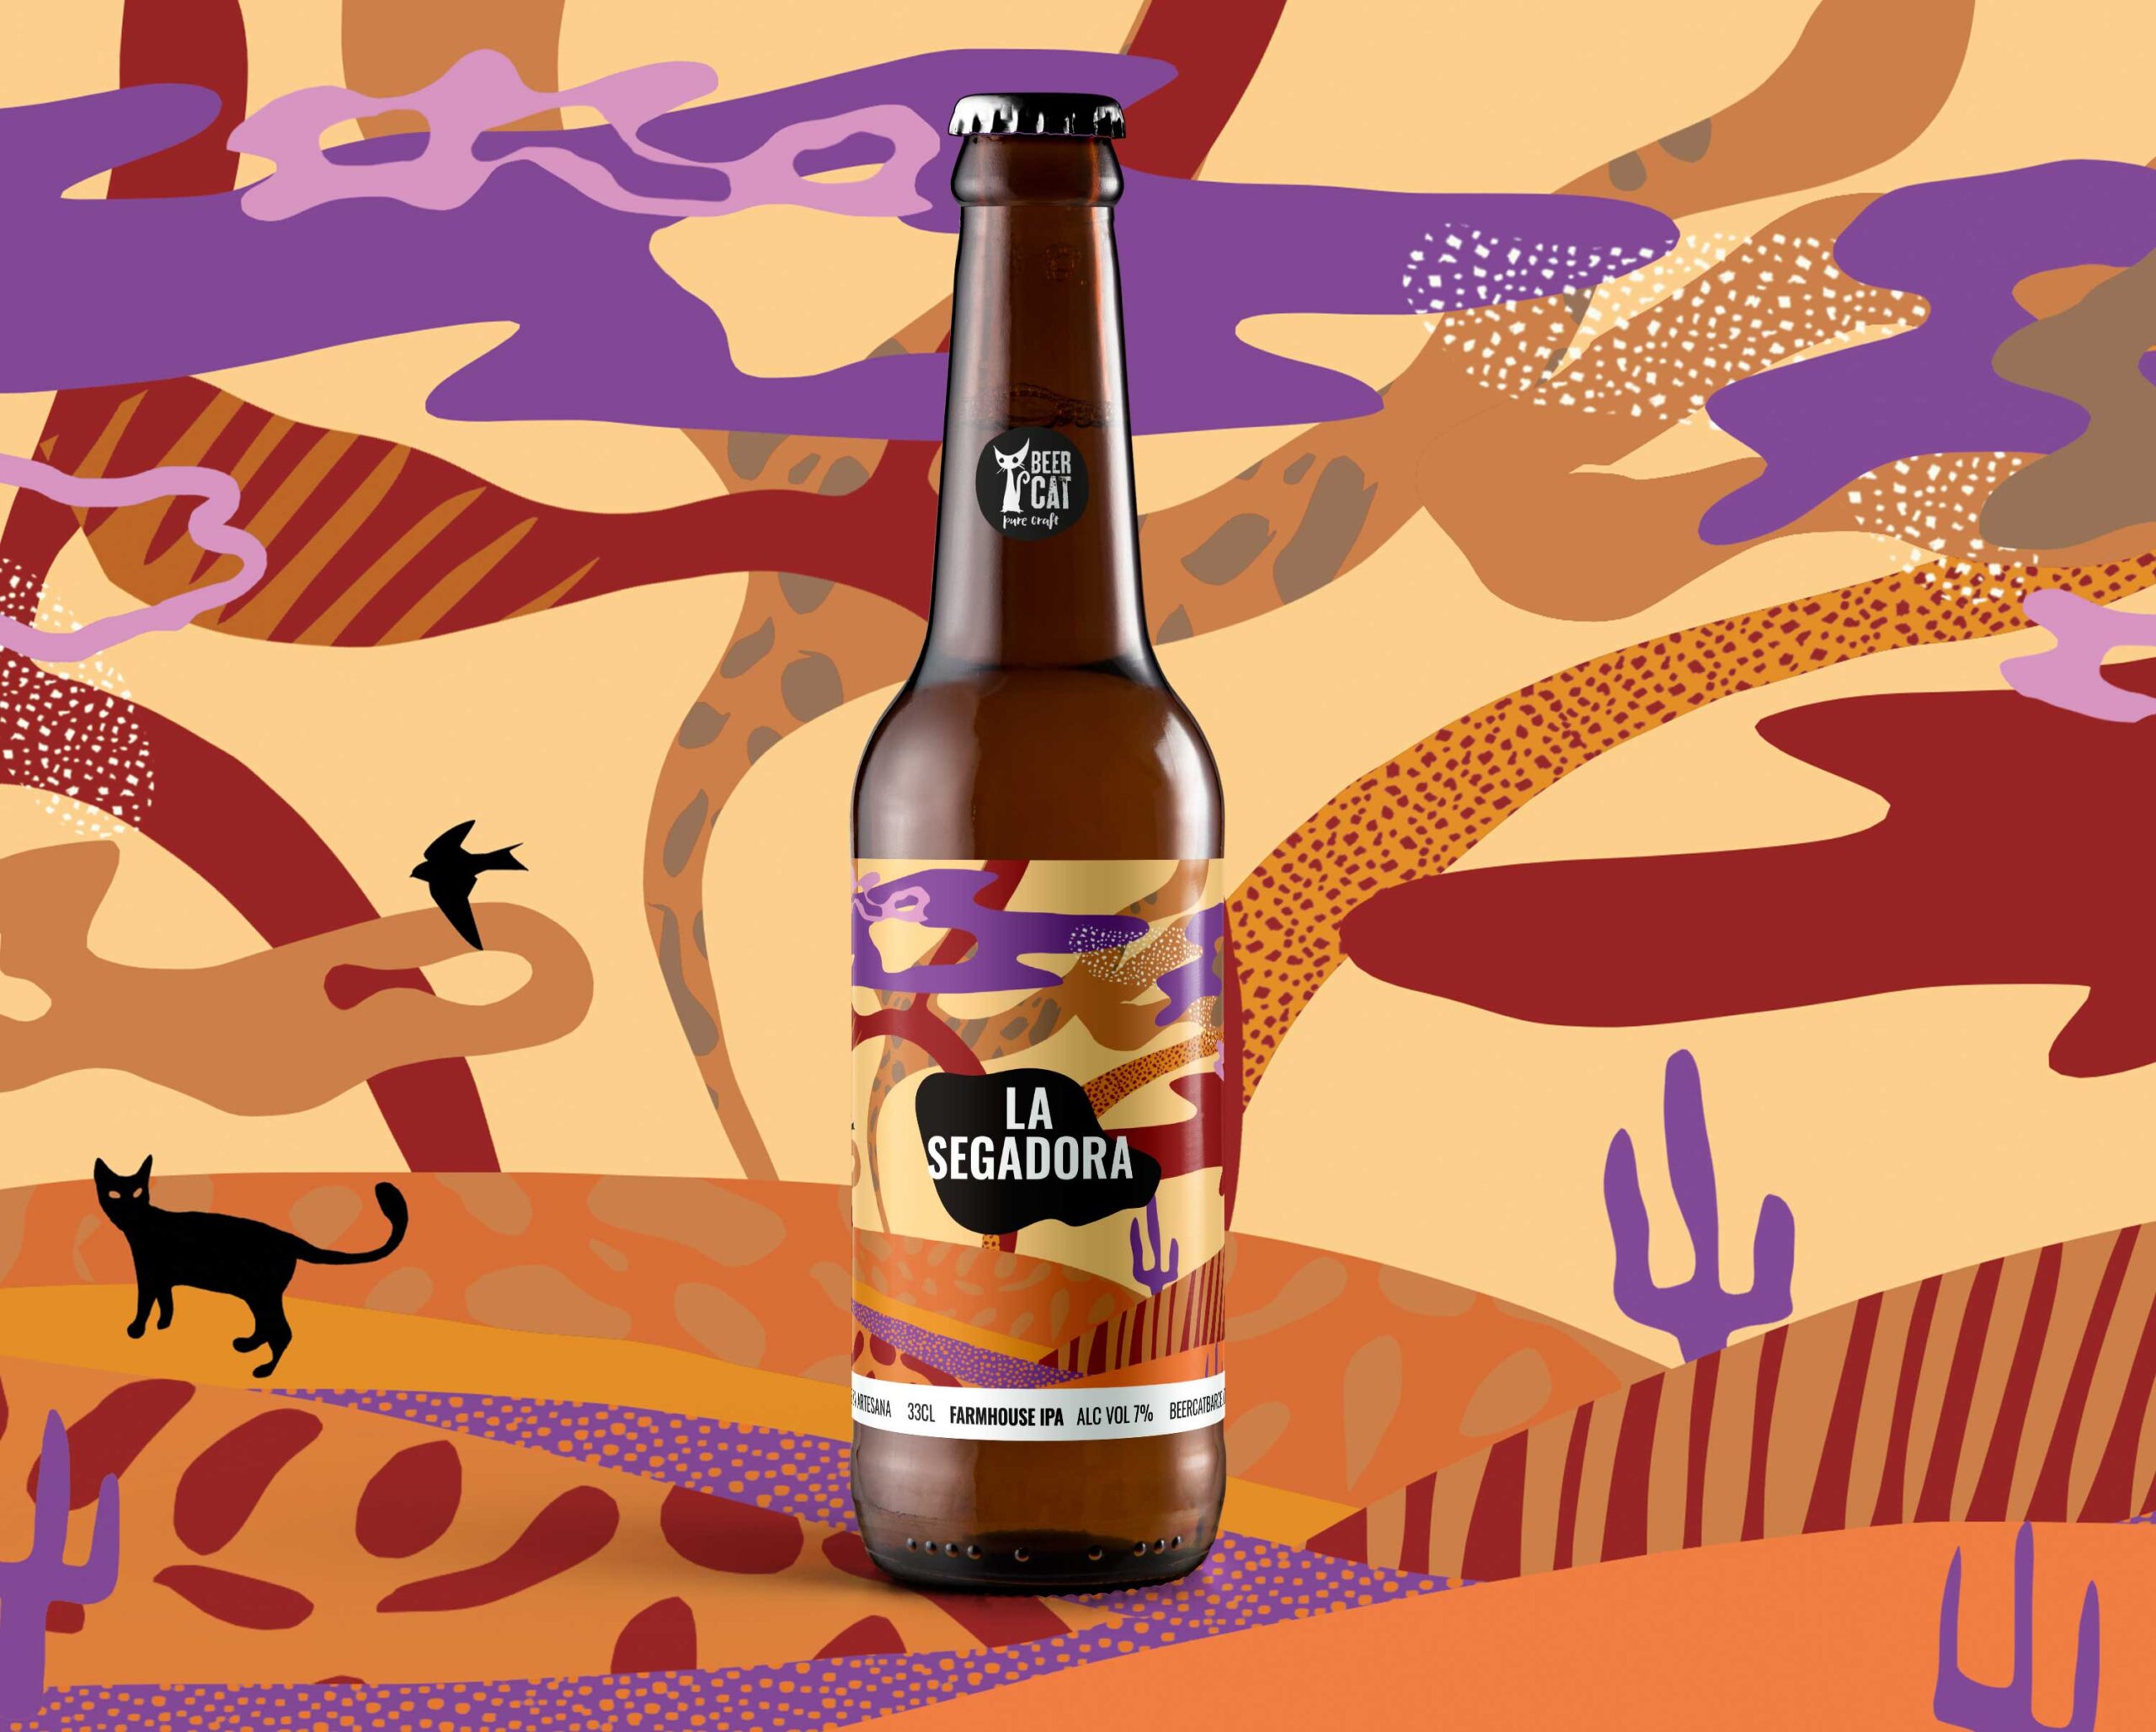 la segadora craftbeer vilafranca penedes disculpi studio angels pinyol scaled - BEERCAT - Il·lustracions i disseny per etiquetes cerveses artesanes